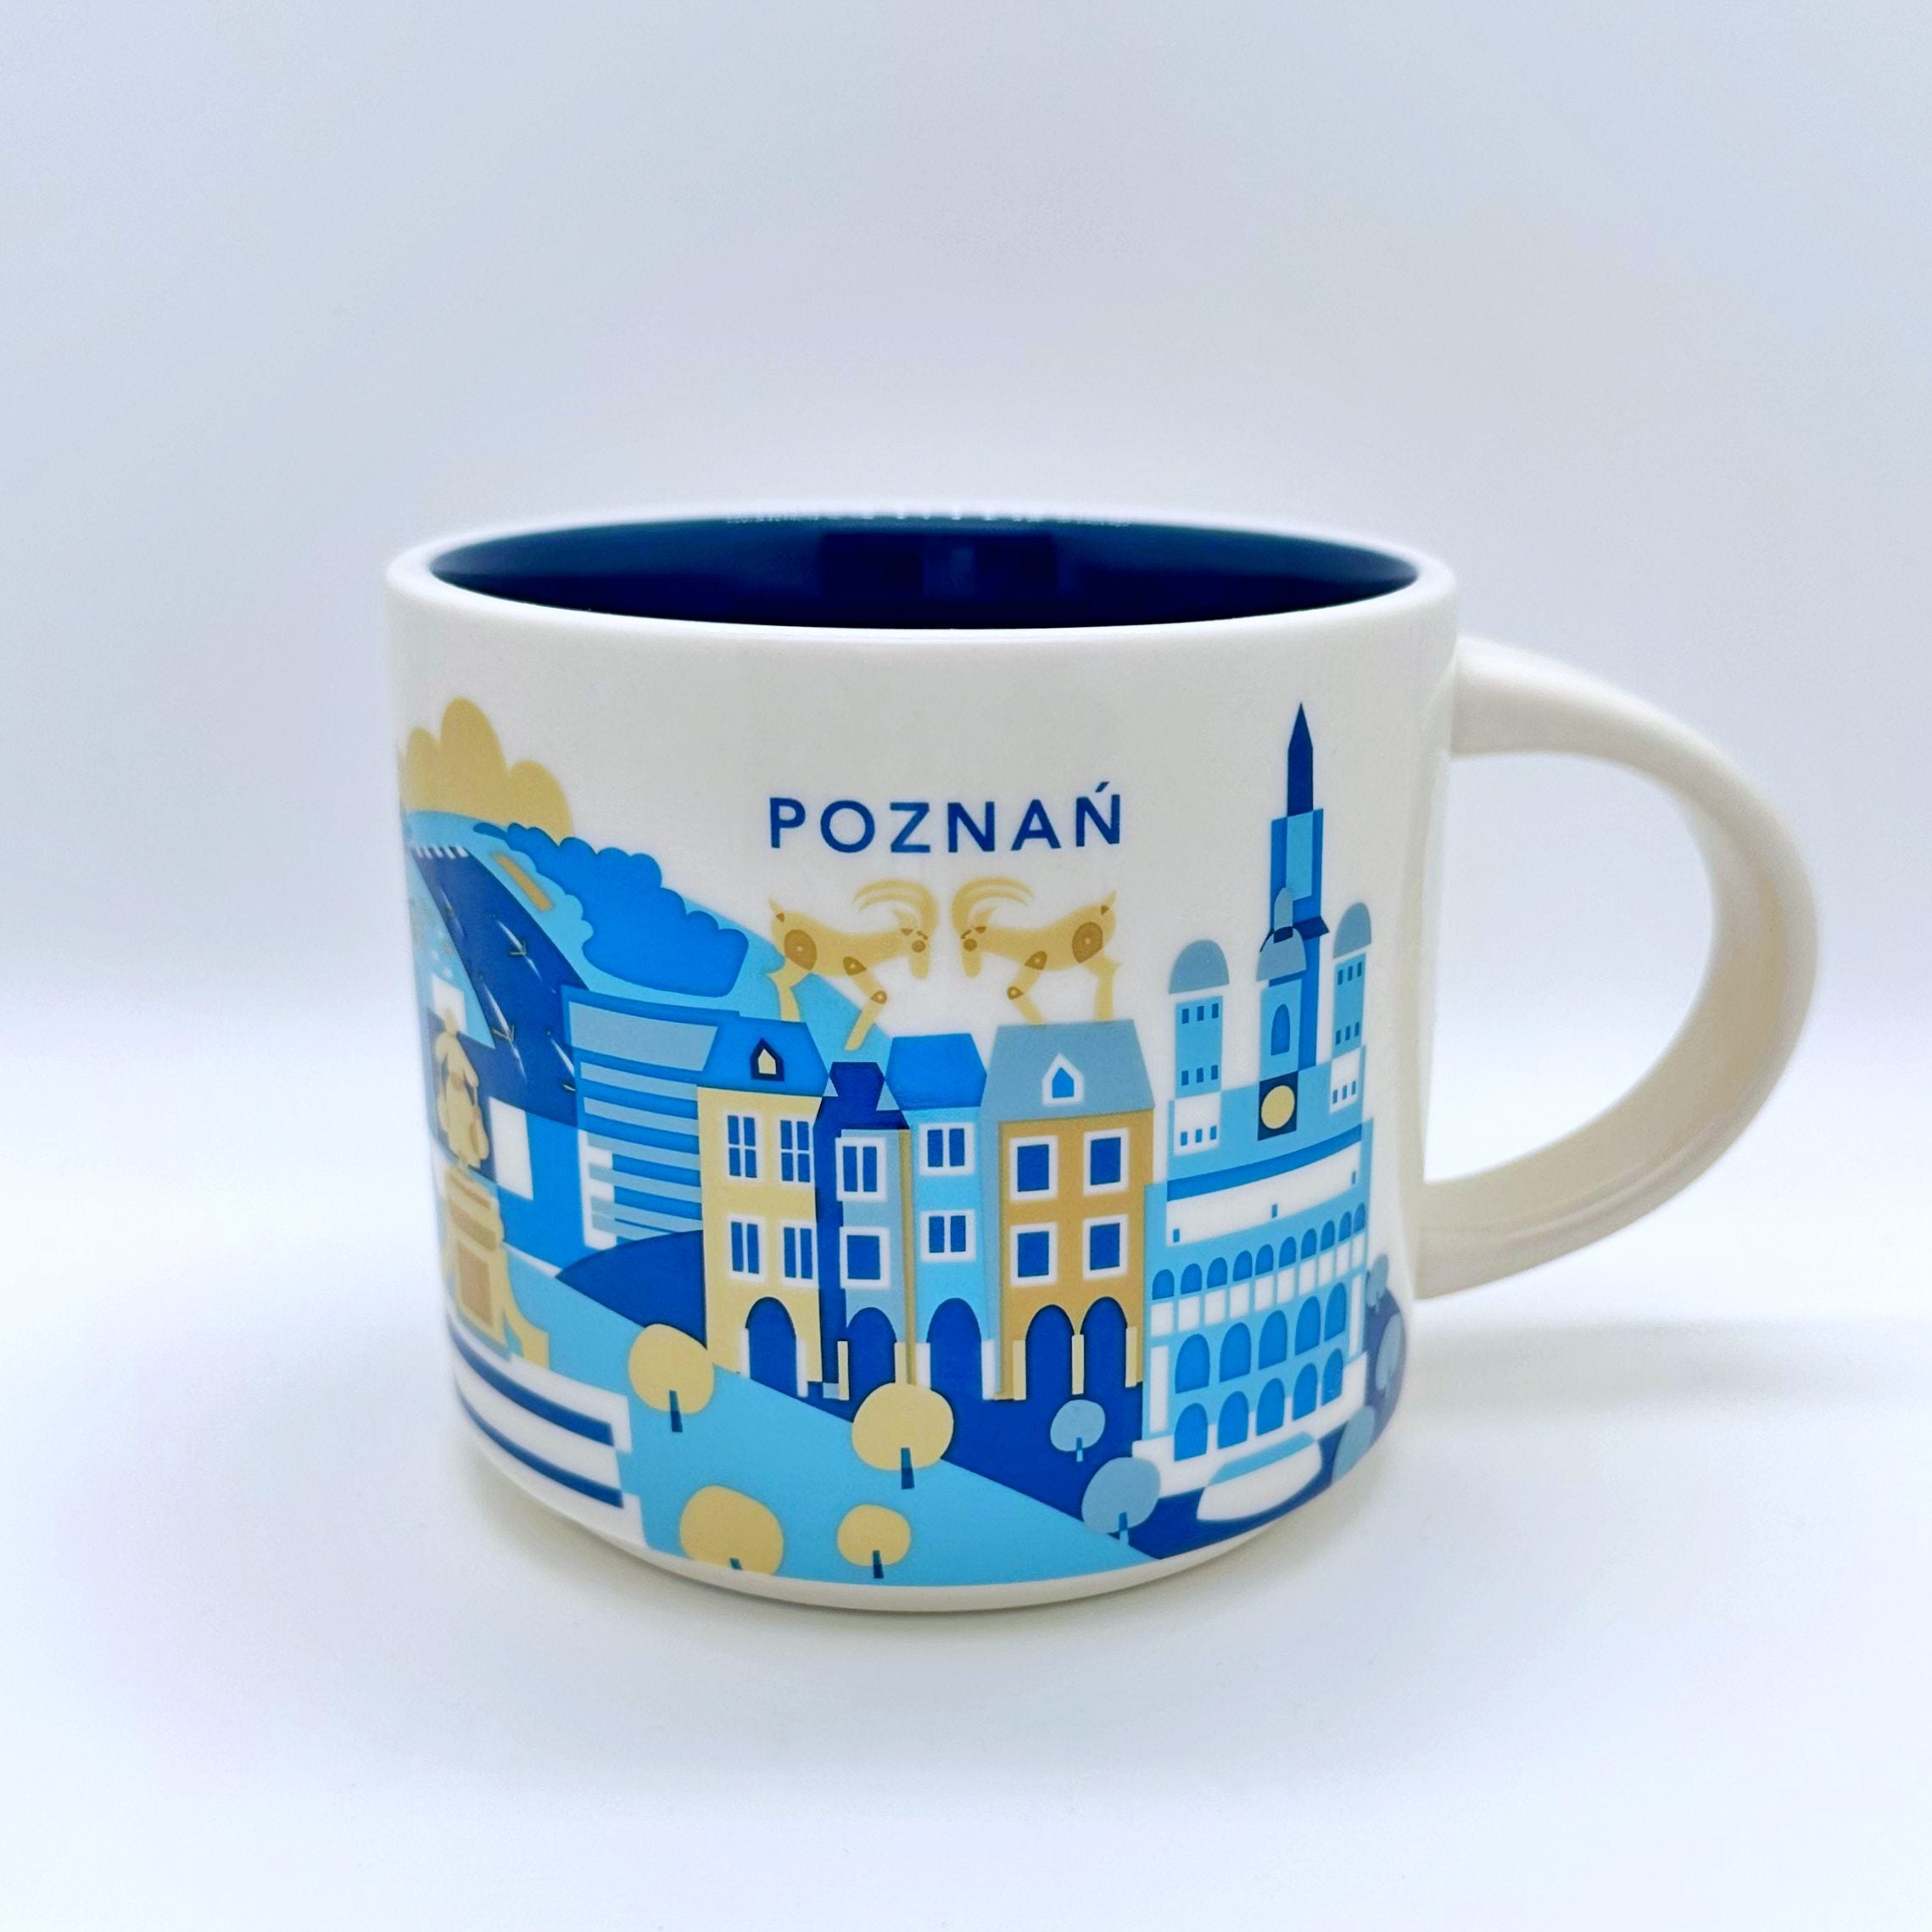 Kaffee Cappuccino oder Tee Tasse von Starbucks mit gemalten Bildern aus der Stadt Posen